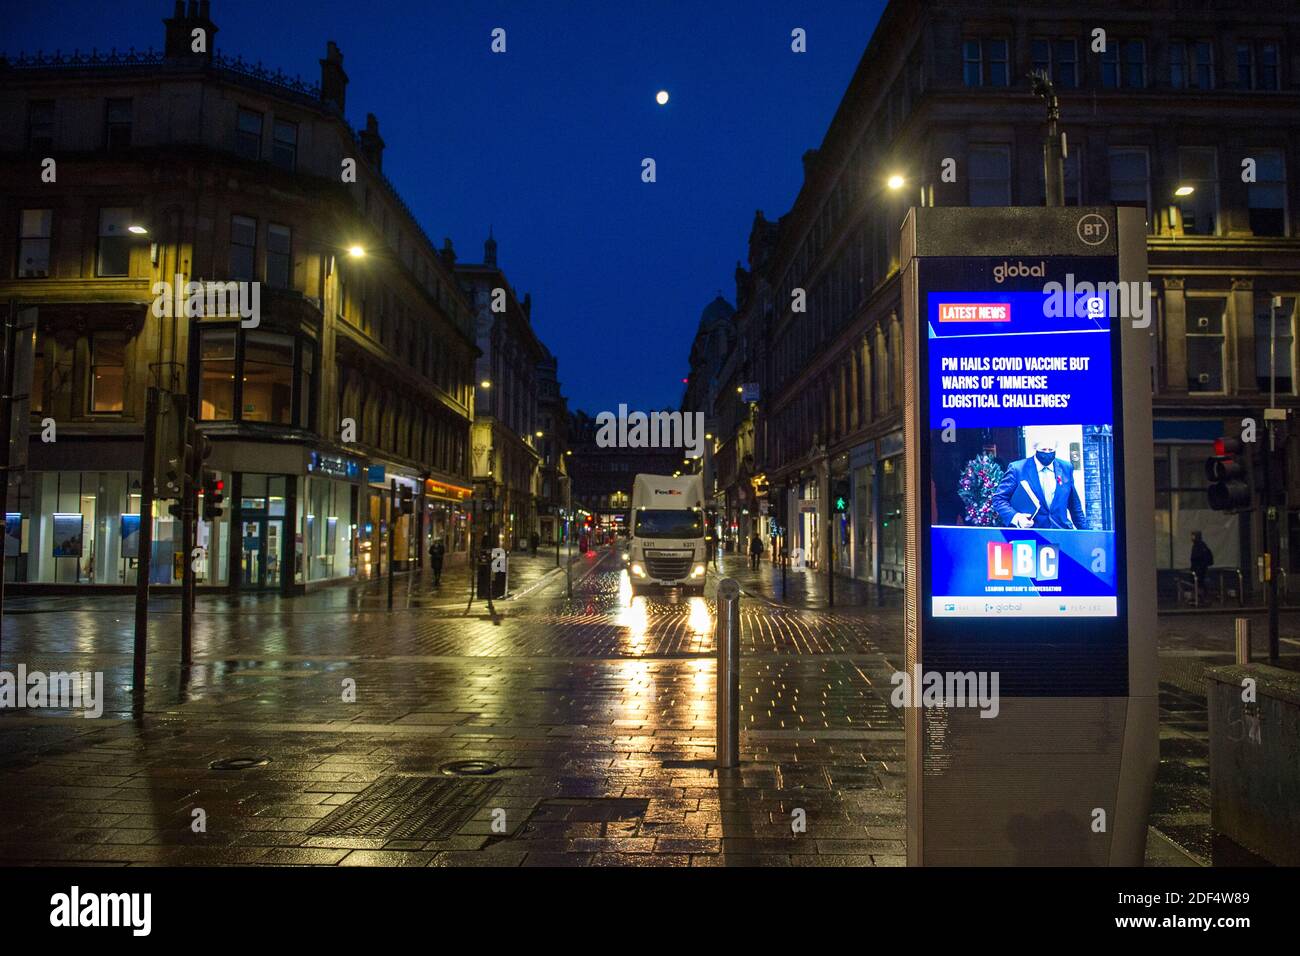 Glasgow, Escocia, Reino Unido. 3 de diciembre de 2020. En la foto: Gordon Street con una noticia en vivo de LBC aconsejando, “PM SALUDA LA VACUNA COVID PERO ADVIERTE de ‘INMENSOS DESAFÍOS LOGÍSTICOS'” escenas en el centro de la ciudad de Glasgow en lo que debería ser un momento ocupado con los viajeros que van a lugares, la primera nieve ha caído por la noche el centro de la ciudad es libre de iones de nieve) sin embargo esto ha tenido un impacto en los viajes, lo que hace que el centro de la ciudad sea muy tranquilo y vacío. Crédito: Colin Fisher/Alamy Live News Foto de stock